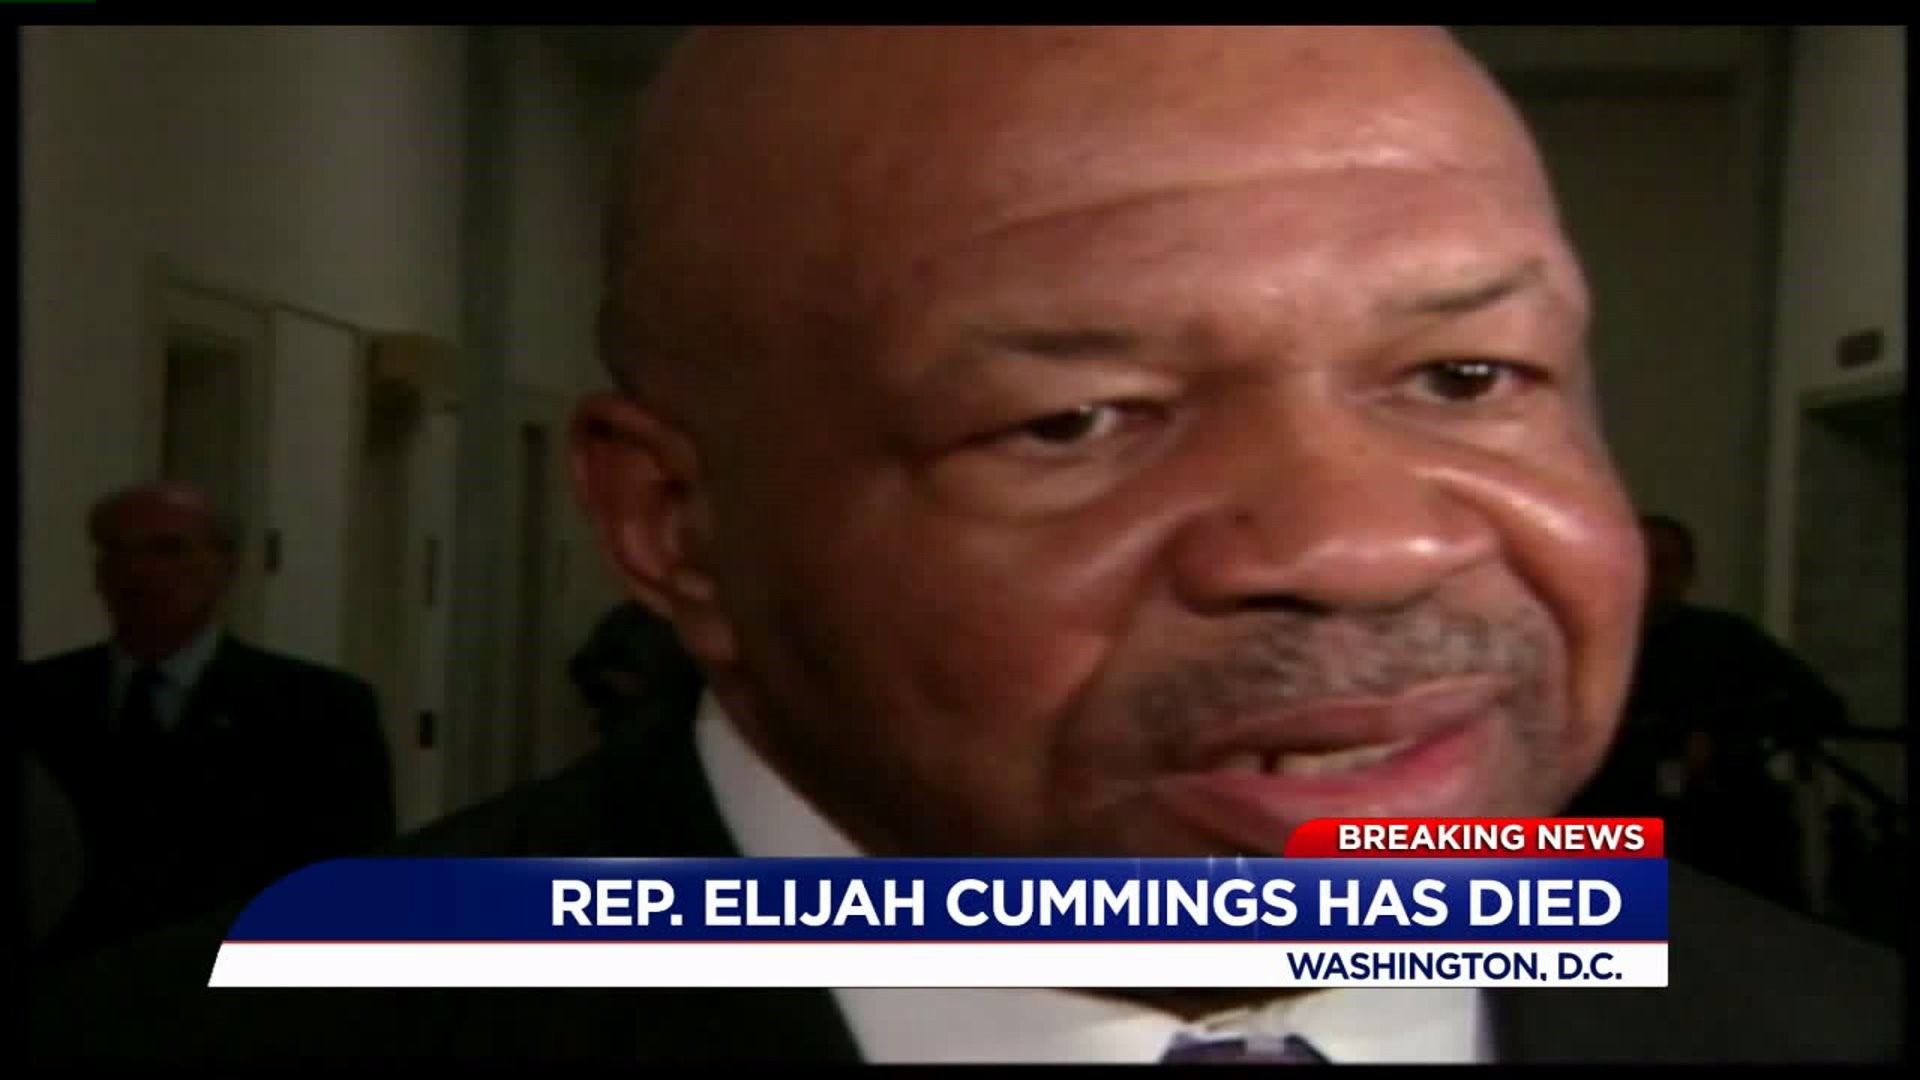 U.S. Representative Elijiah Cummings dies after longstanding health complications